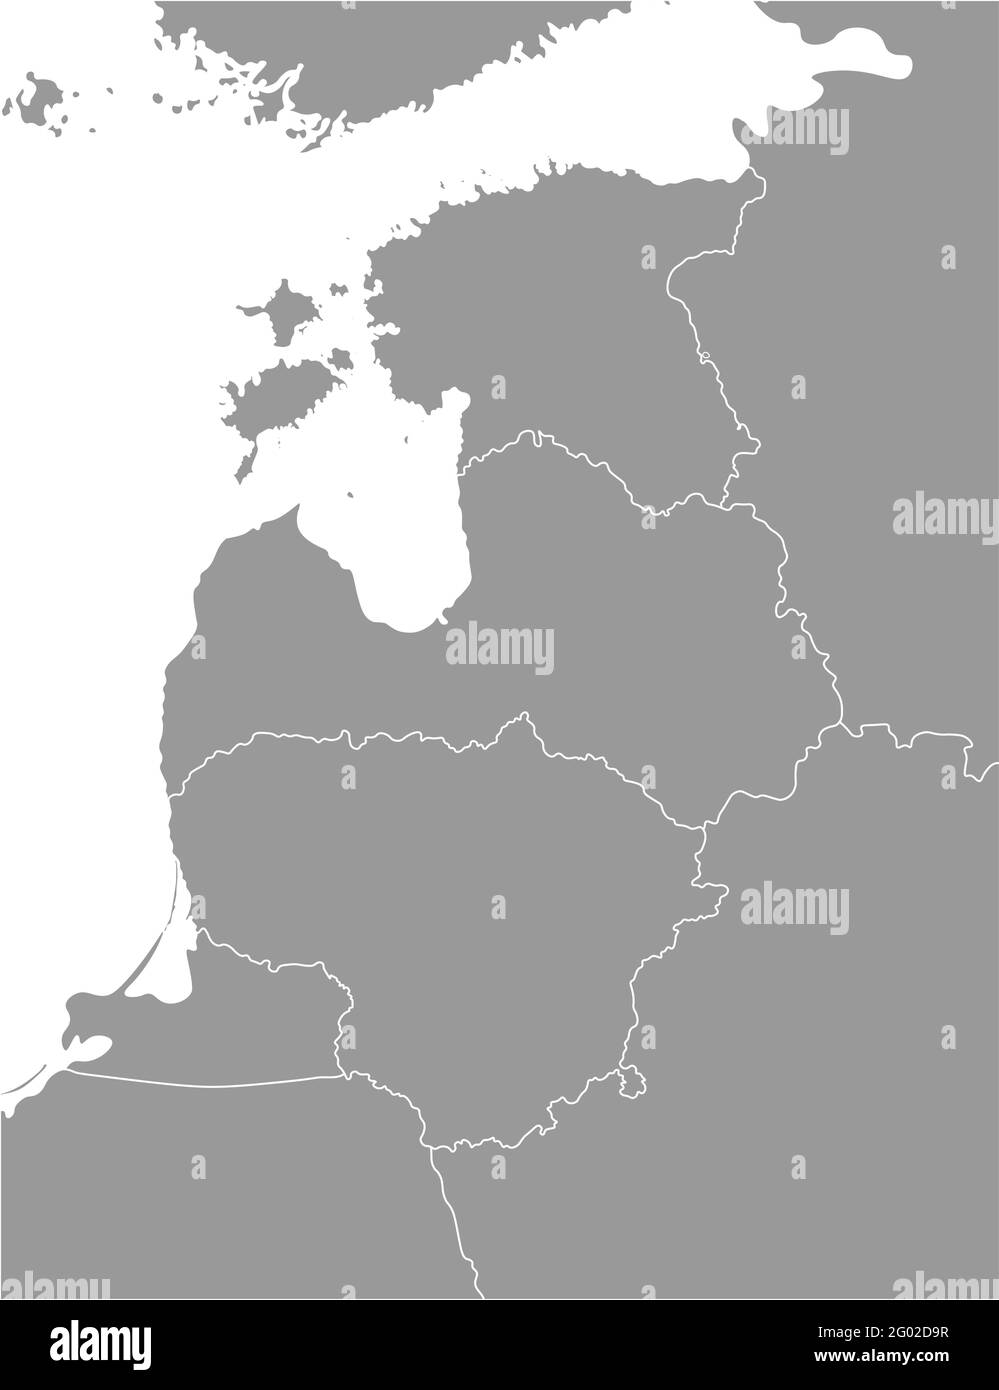 Ilustración vectorial aislada del mapa político simplificado de los estados bálticos (Estonia, Letonia, Lituania) y los países más cercanos. Fronteras de los estados. G Ilustración del Vector